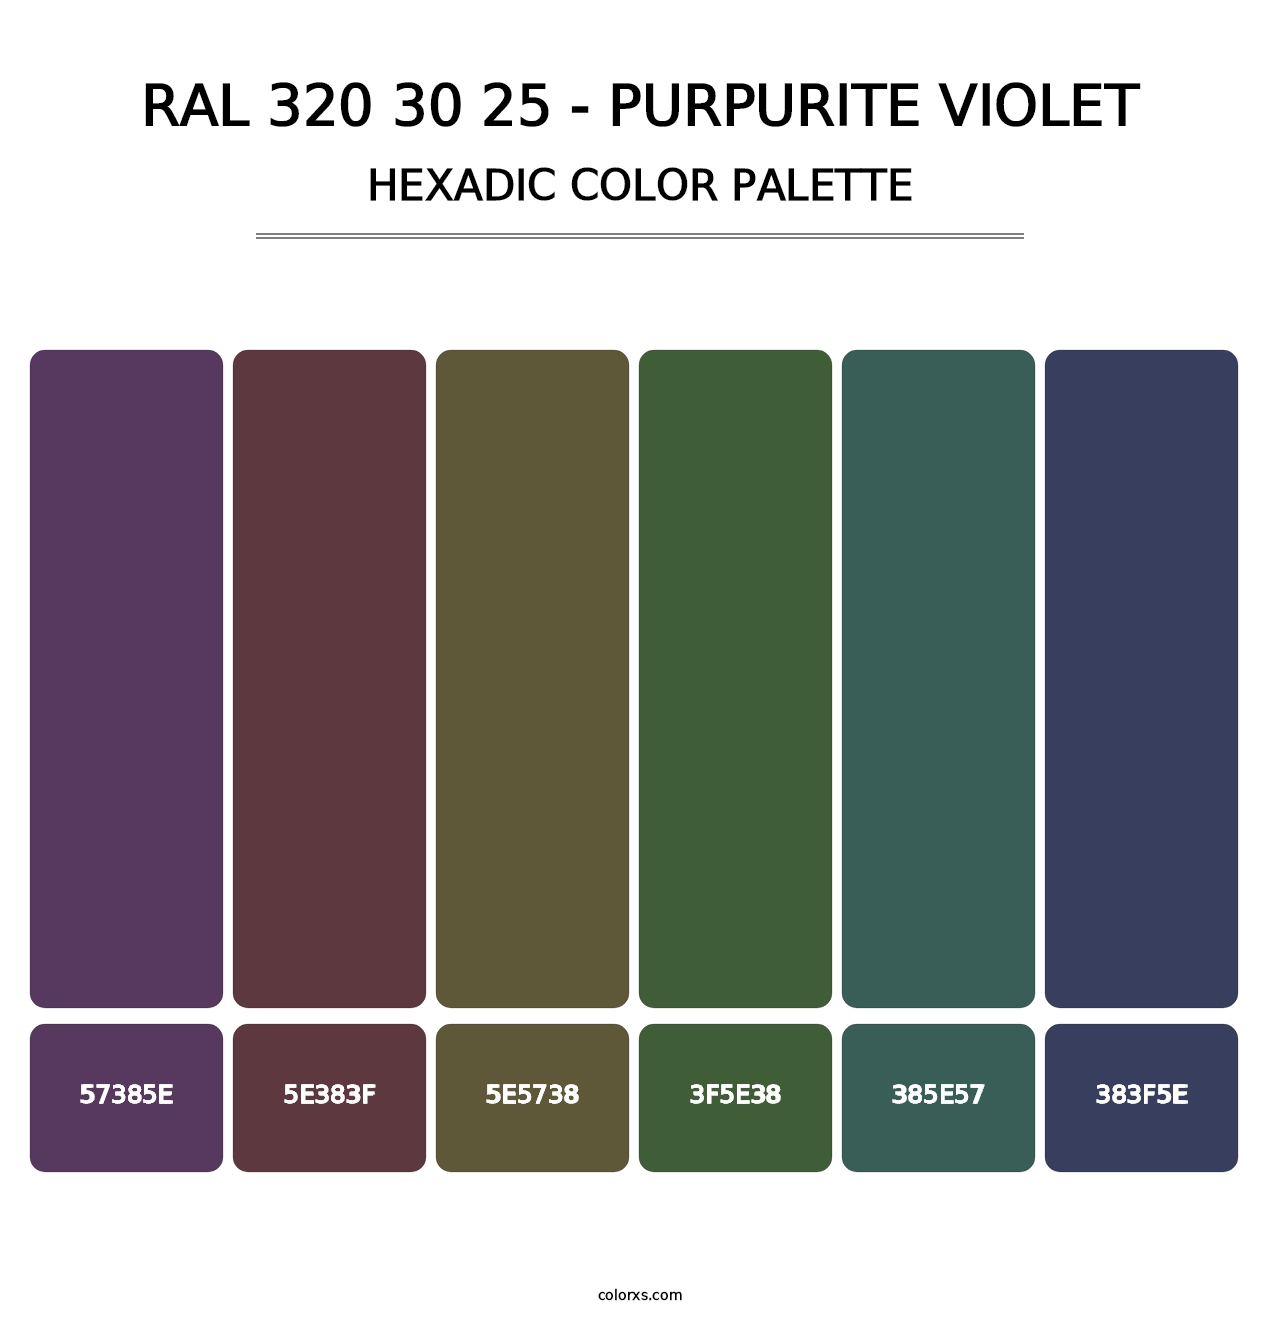 RAL 320 30 25 - Purpurite Violet - Hexadic Color Palette